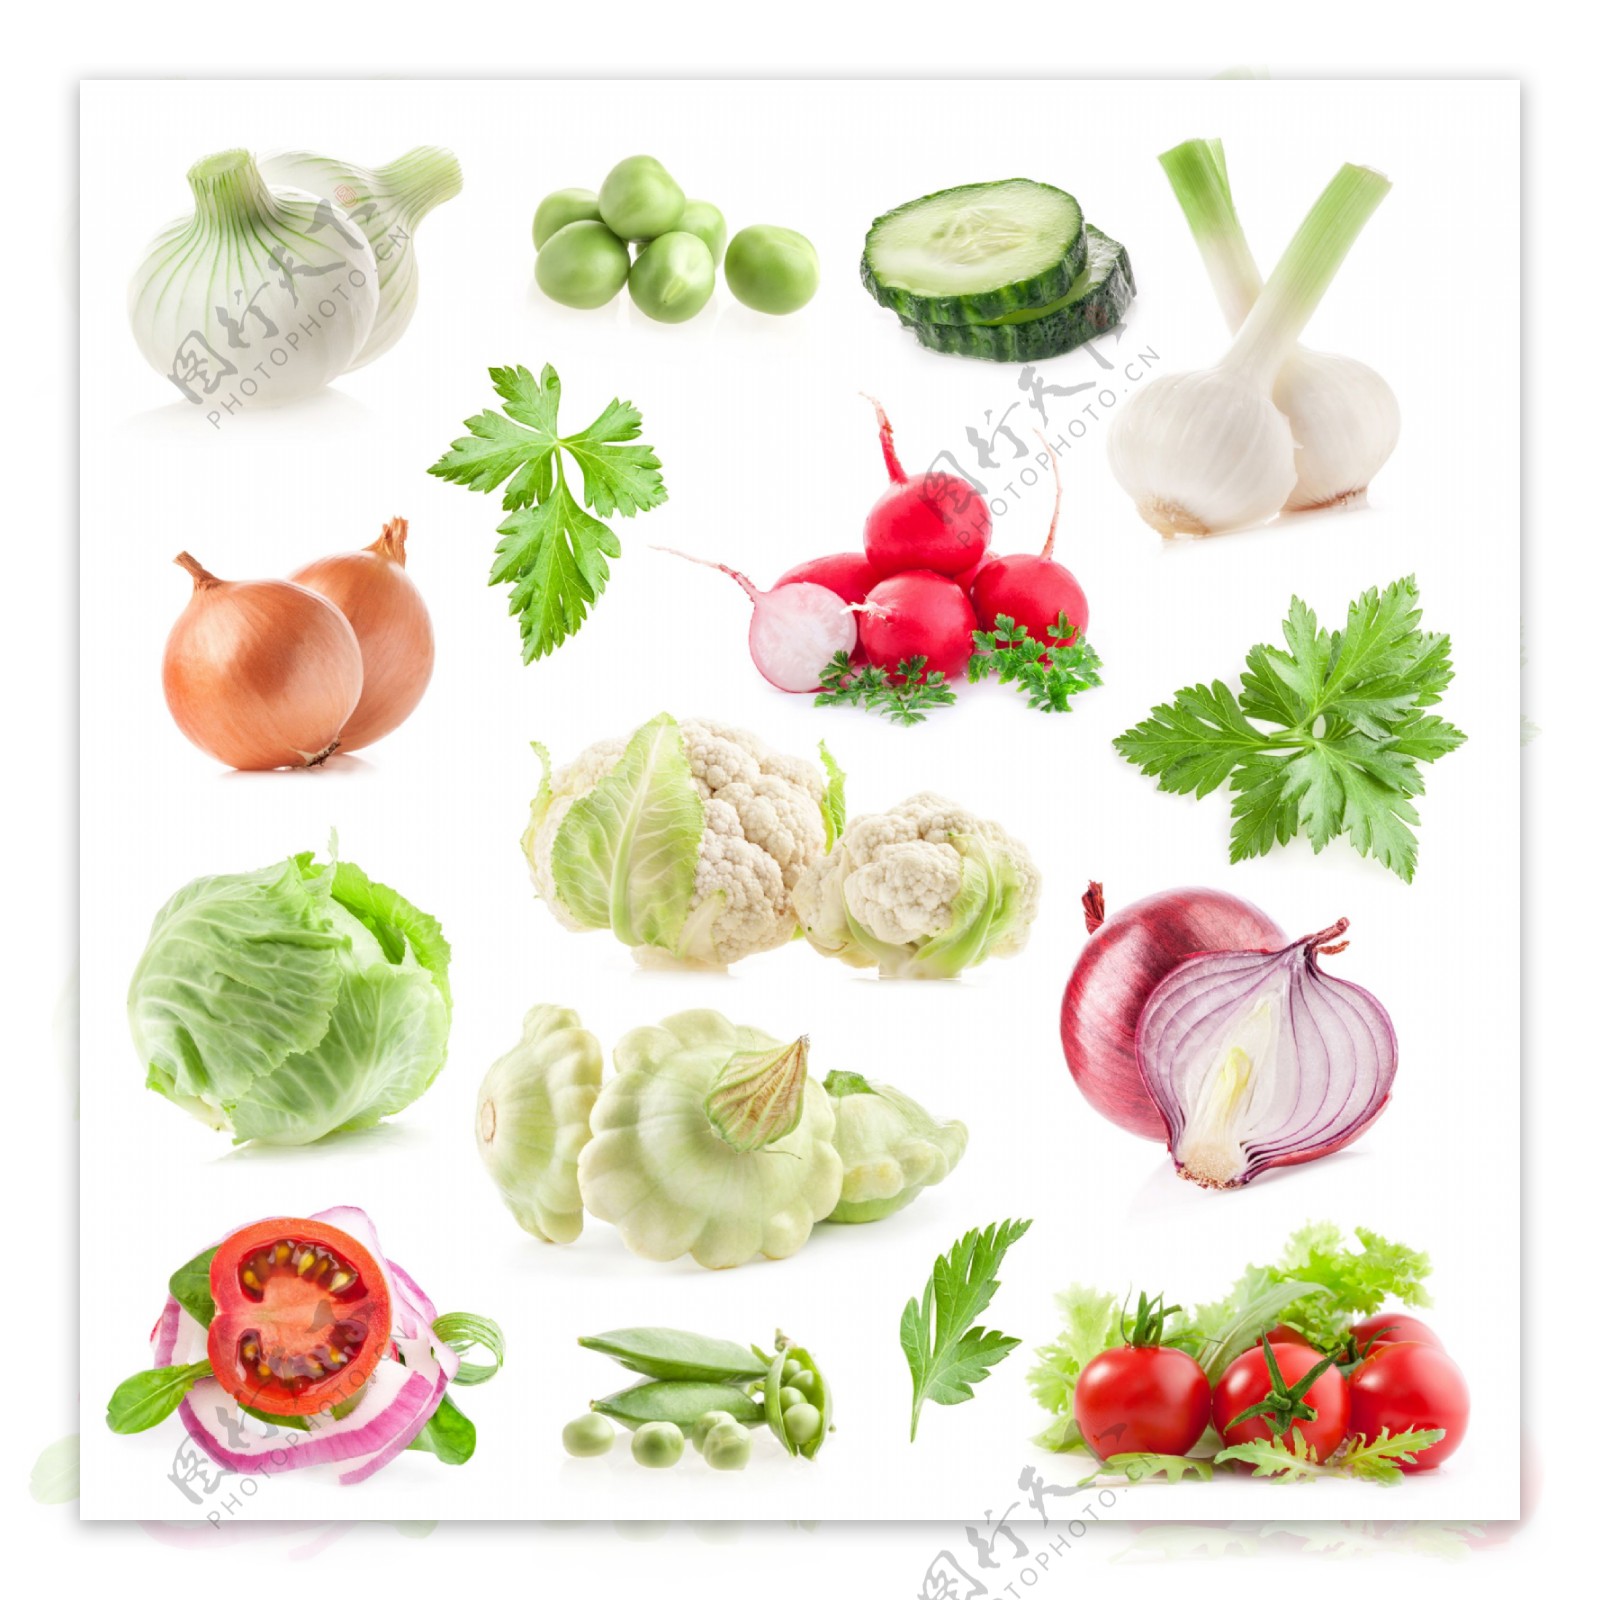 各种蔬菜高清摄影图片